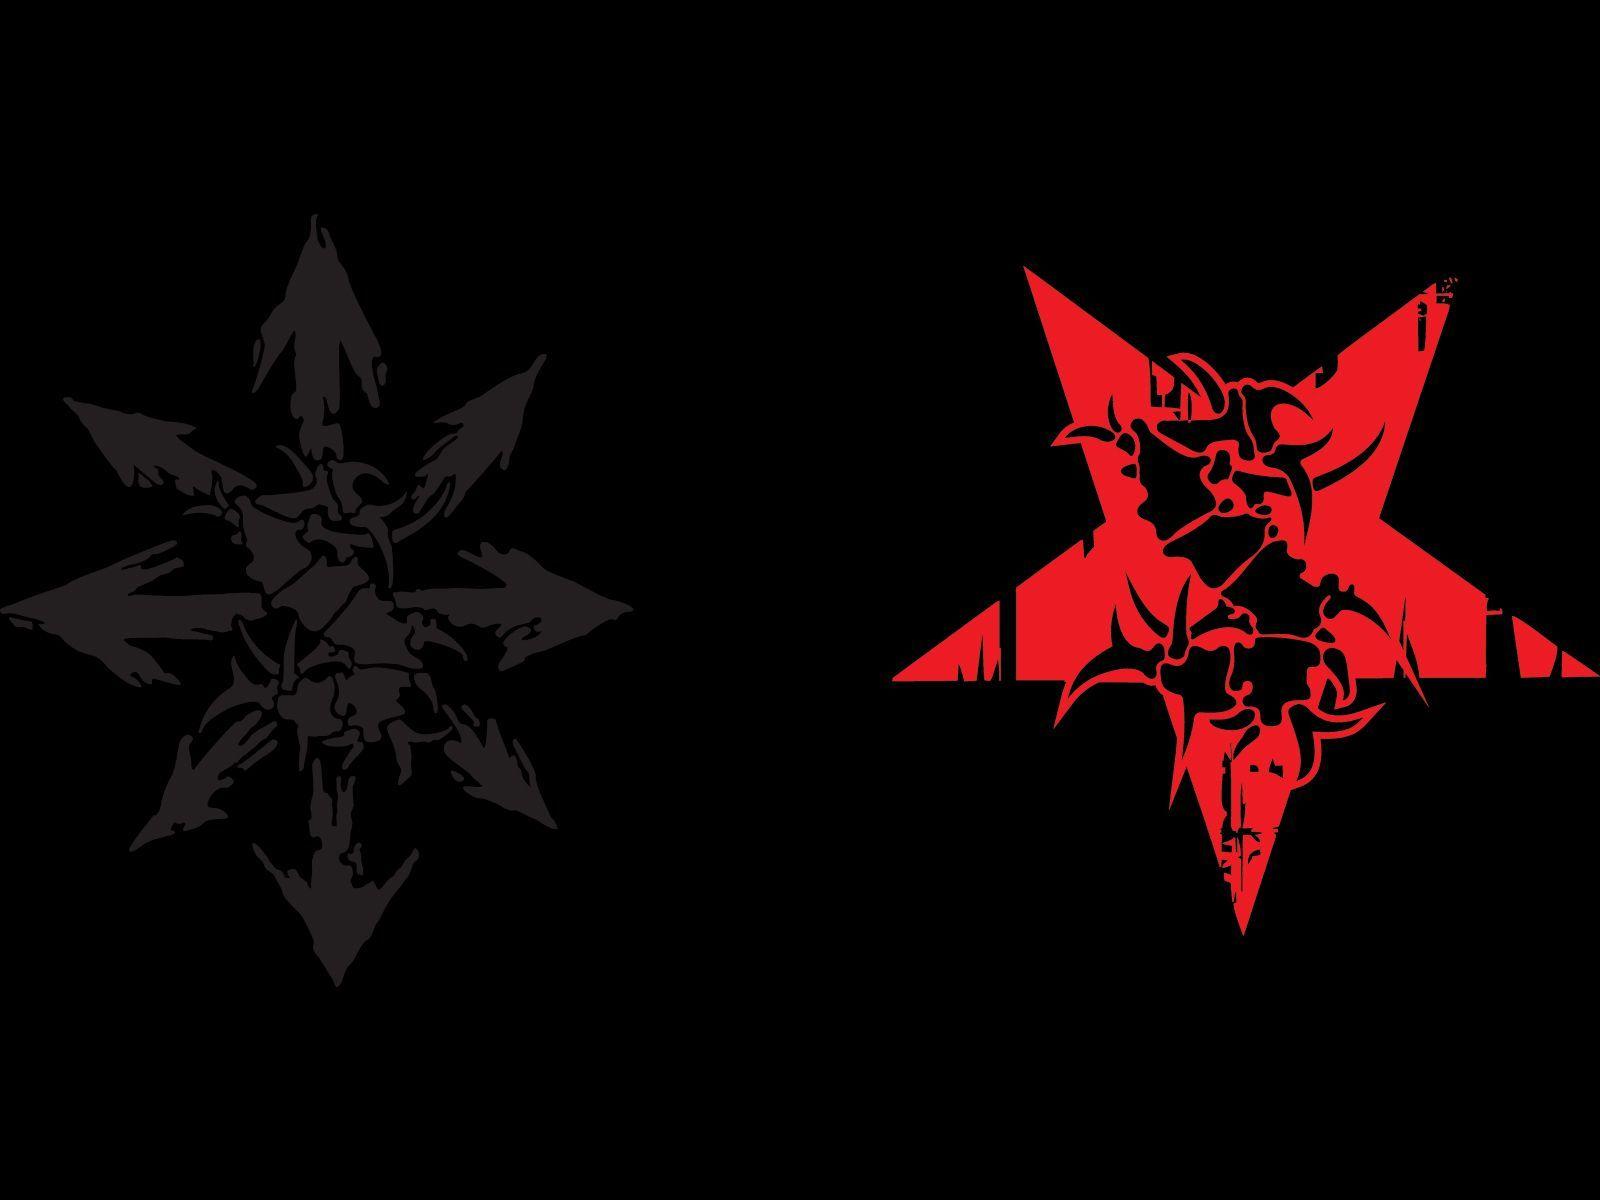 Sepultura logo and wallpaper. Band logos band logos